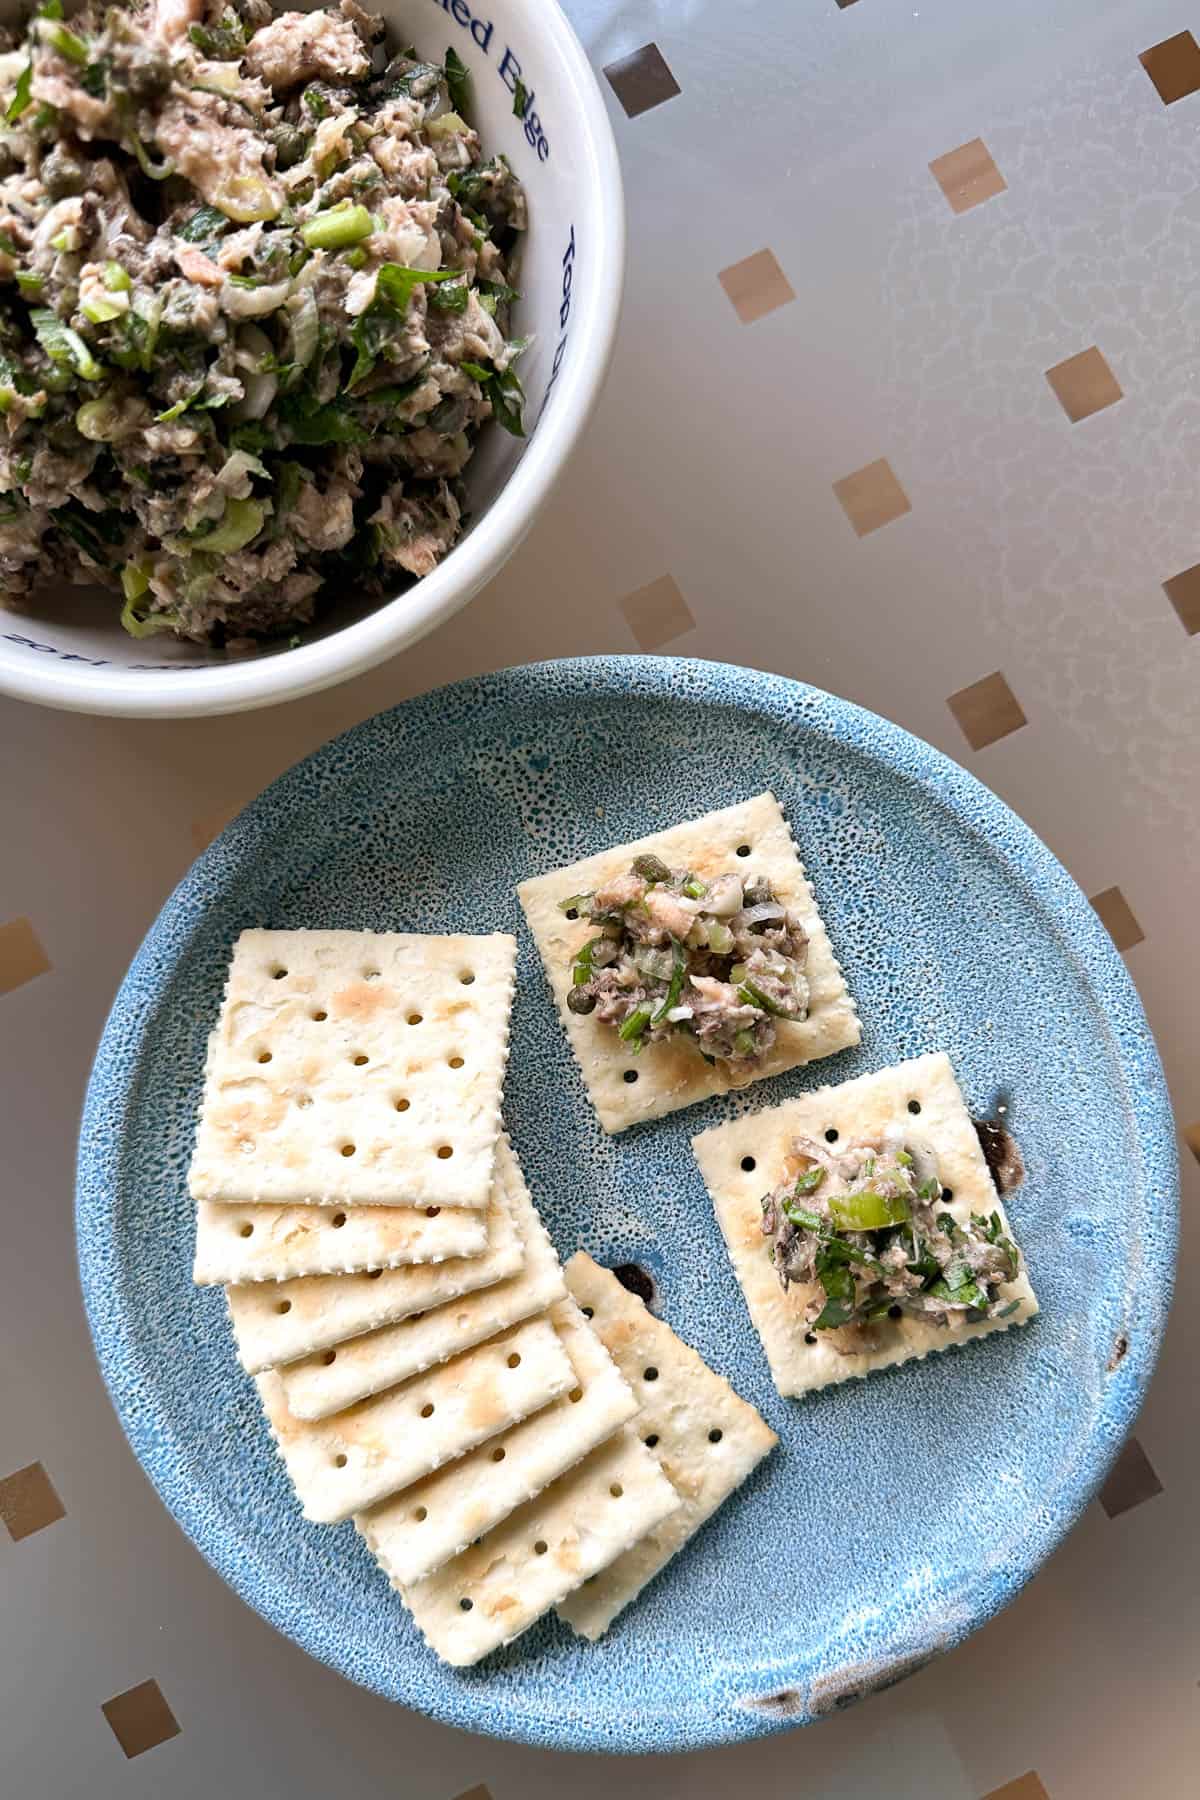 Sardine salad on crackers.